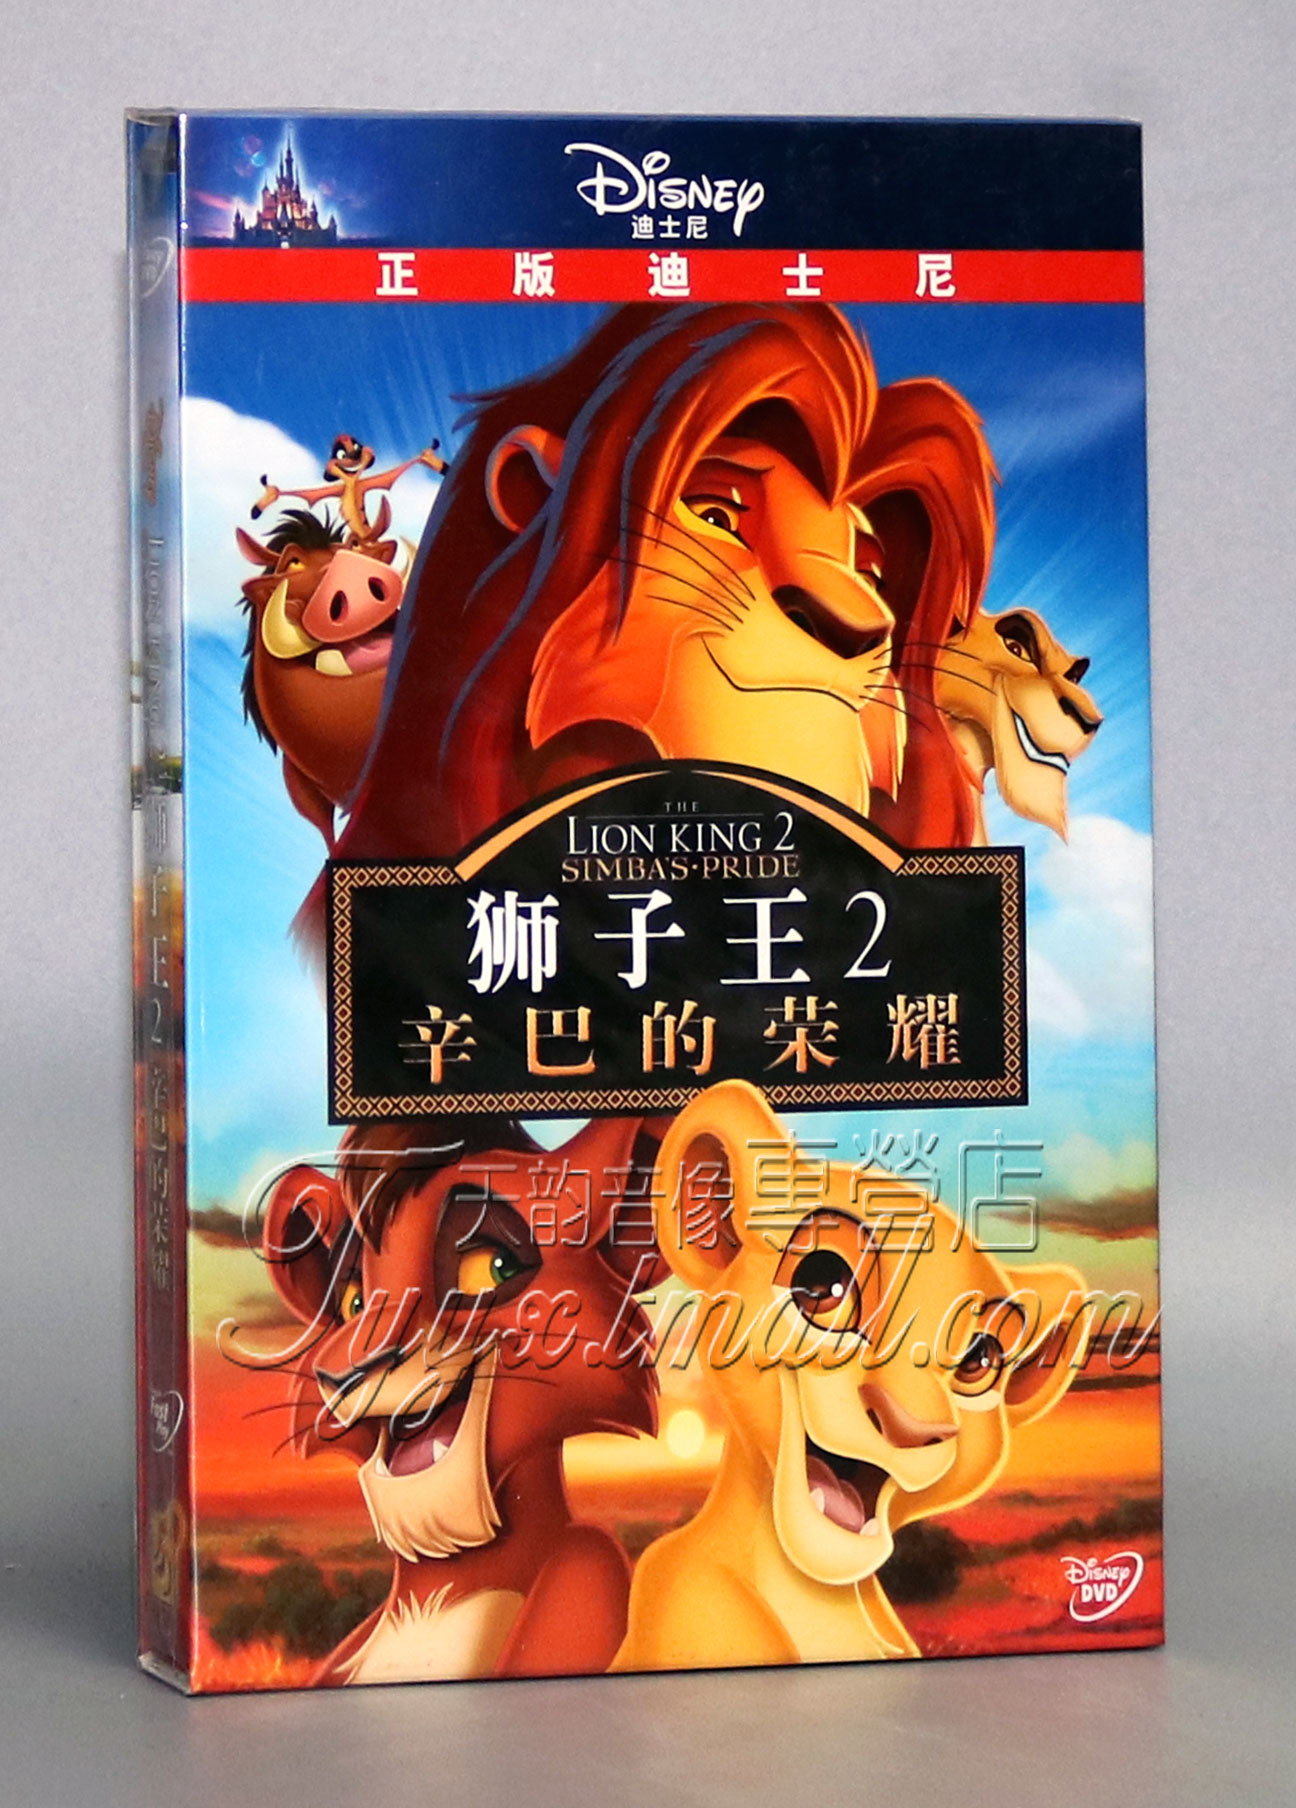 正版动画片 Disney卡通 狮子王2辛巴的荣耀 DVD9 珍藏版 中英双语